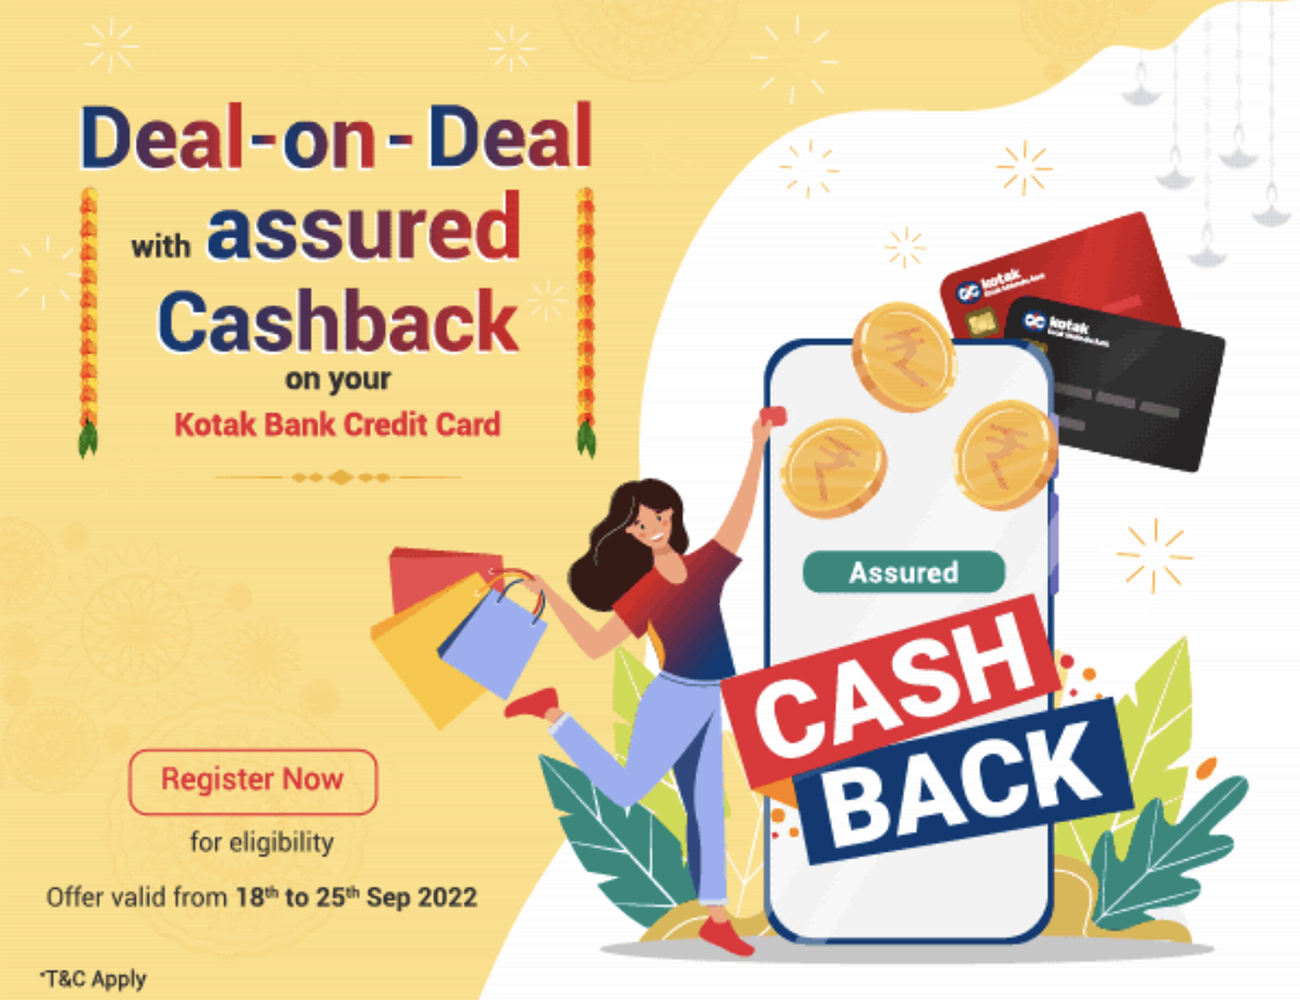 Kotak Cashback offer on Online Spends